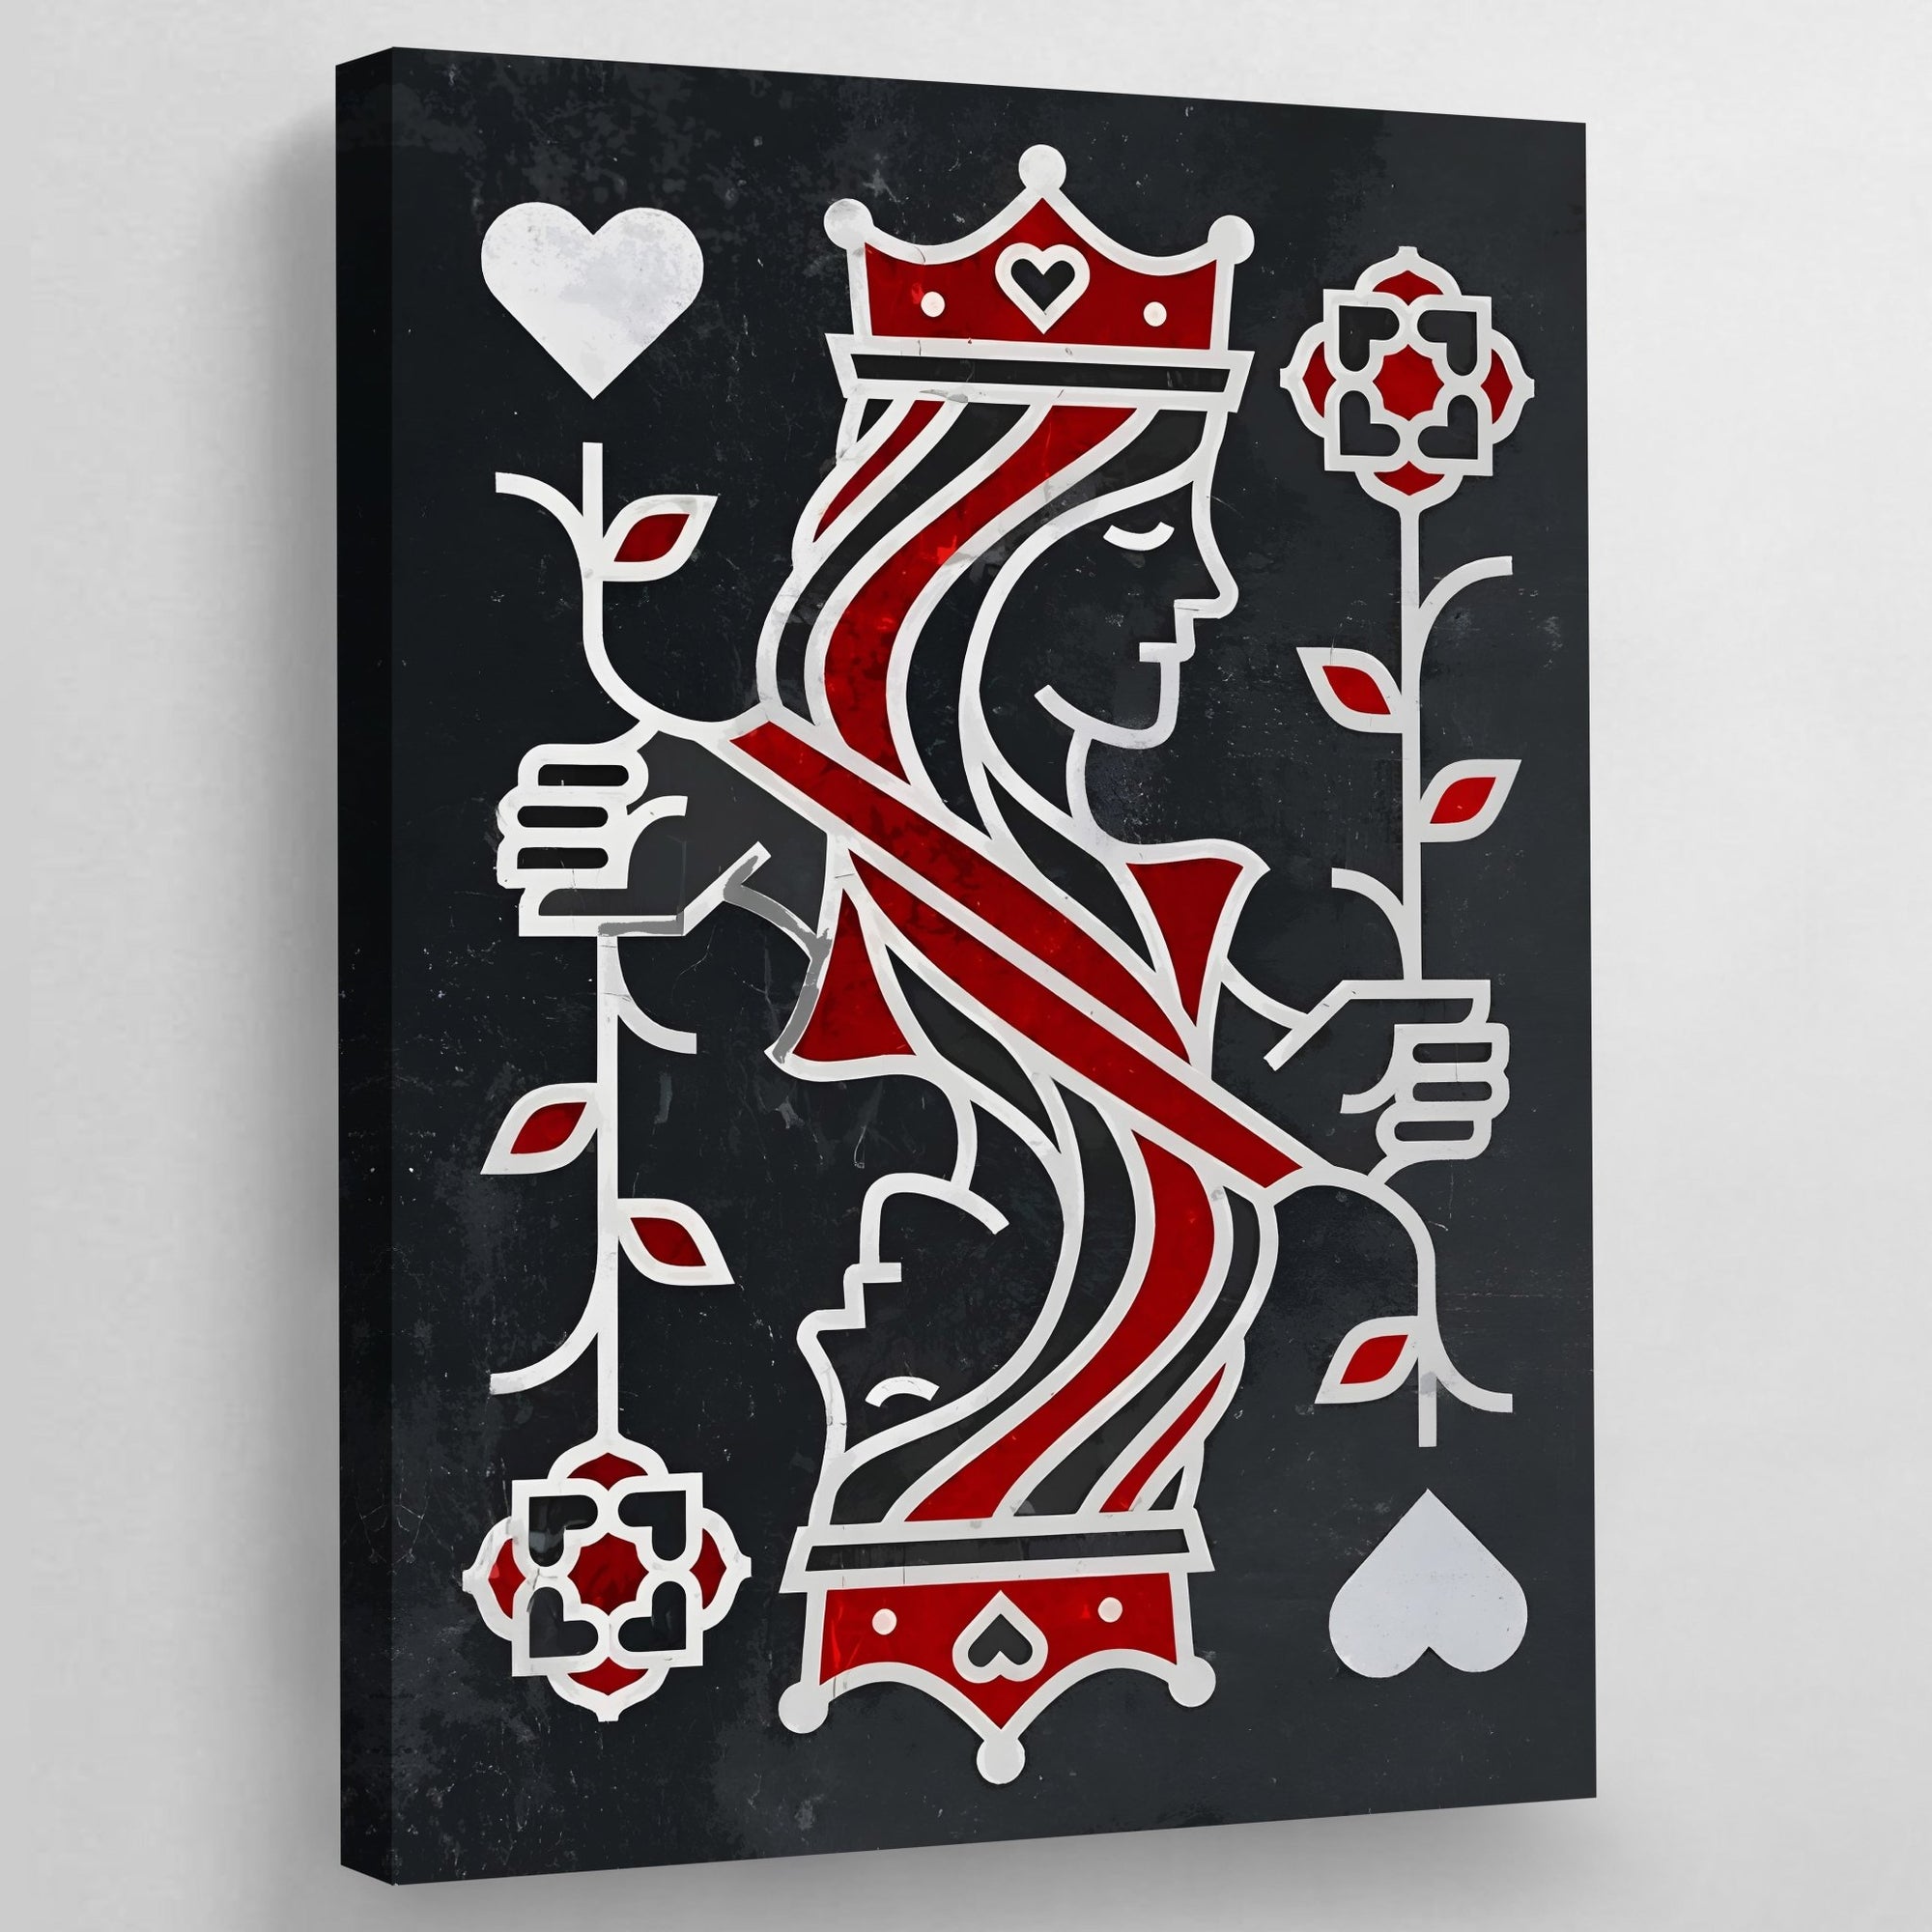 Queen Of Hearts Wall Art - The Trendy Art